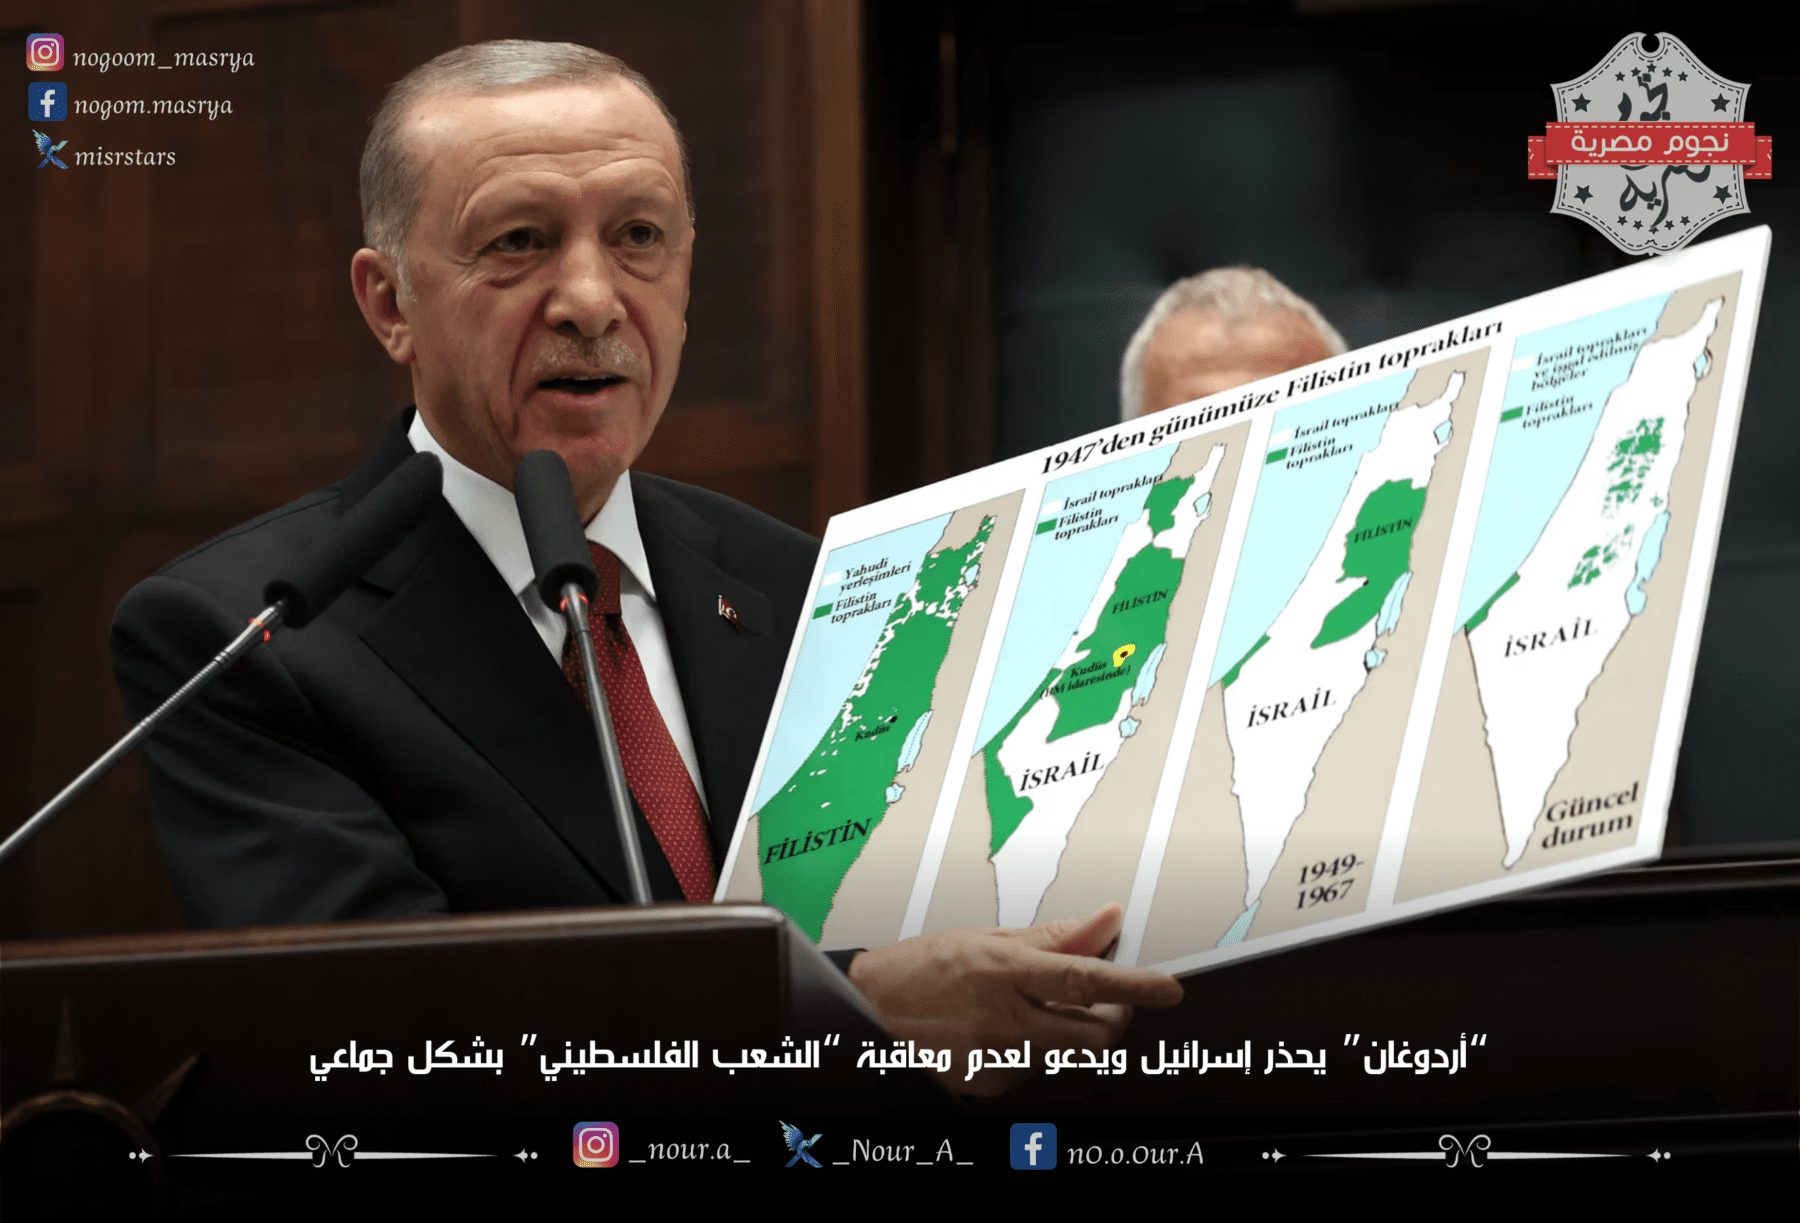 الرئيس التركي رجب طيب أردوغان يحمل خريطة فلسطين - مصدر الصورة: موقع CNN